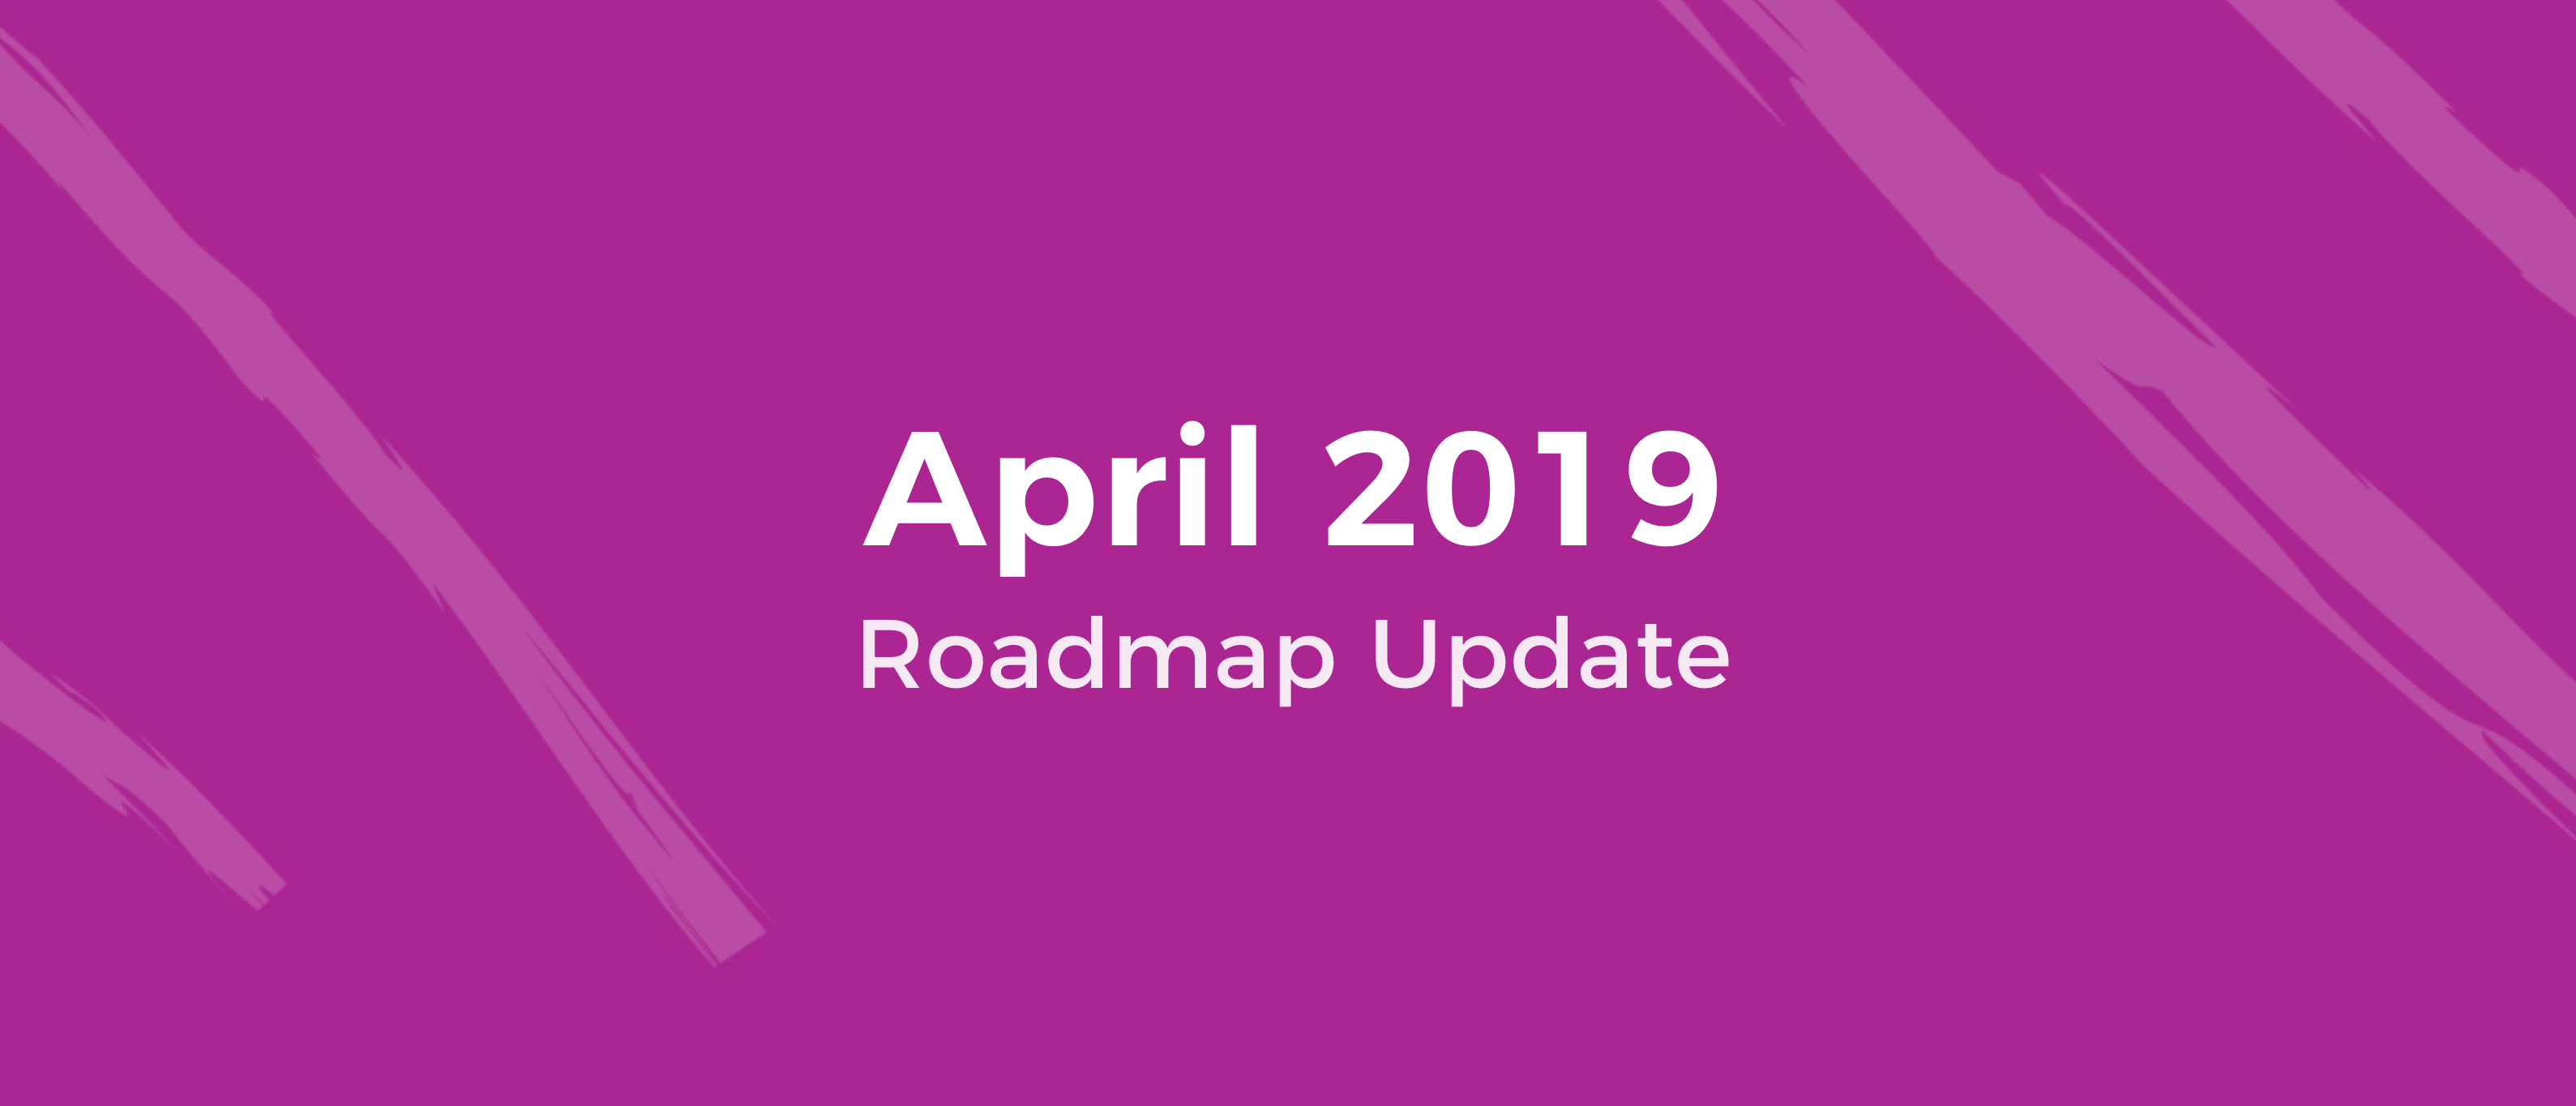 Roadmap Update April 2019